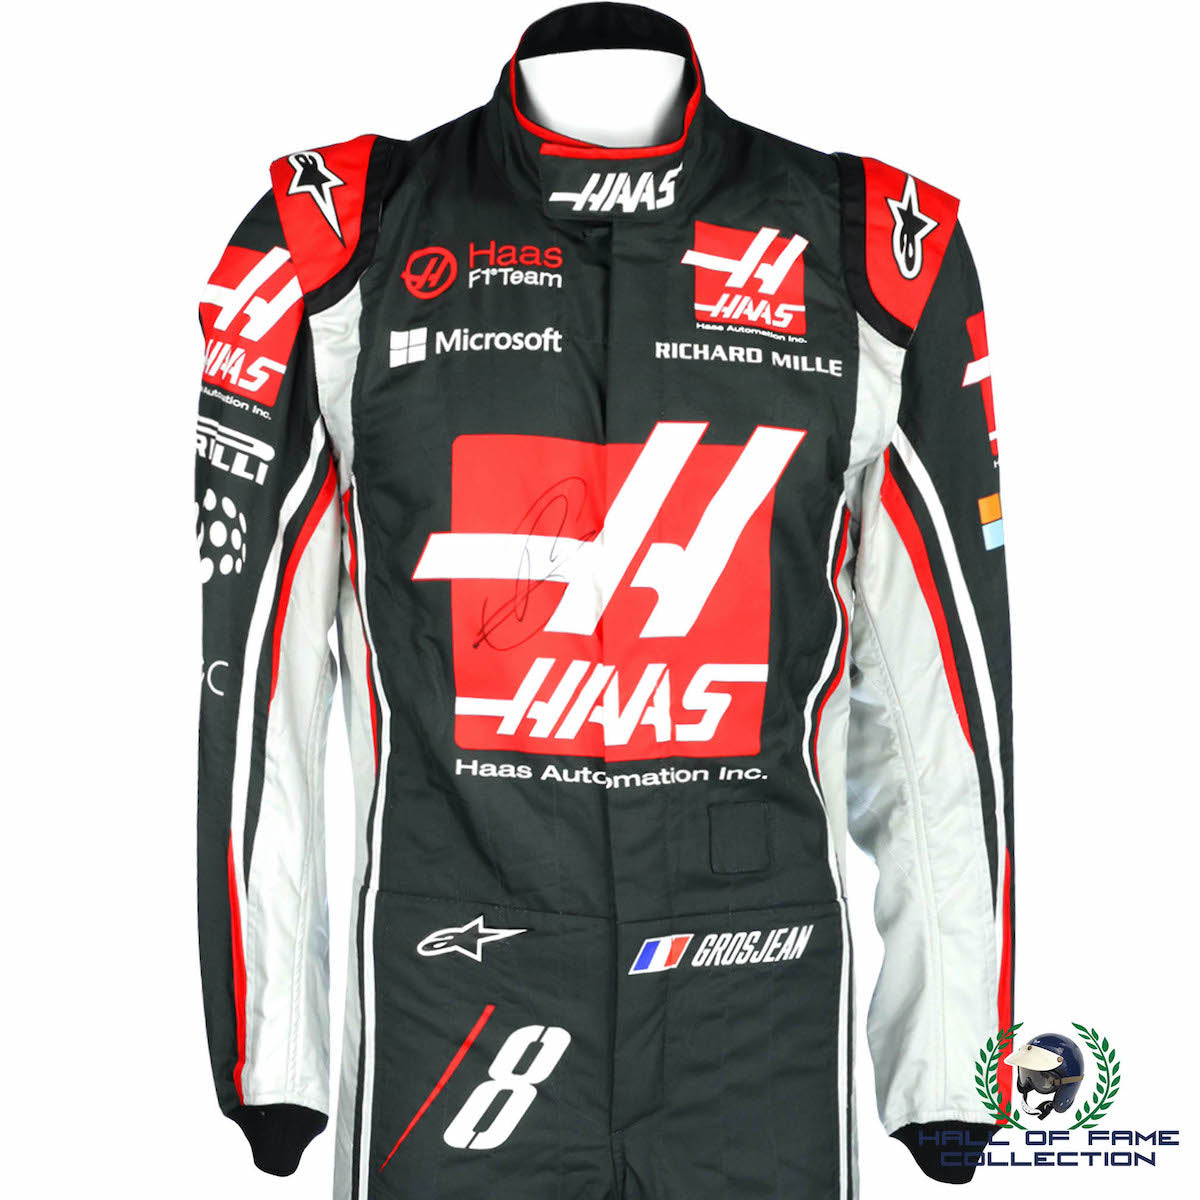 2017 Romain Grosjean Signed Race Used Haas F1 Suit